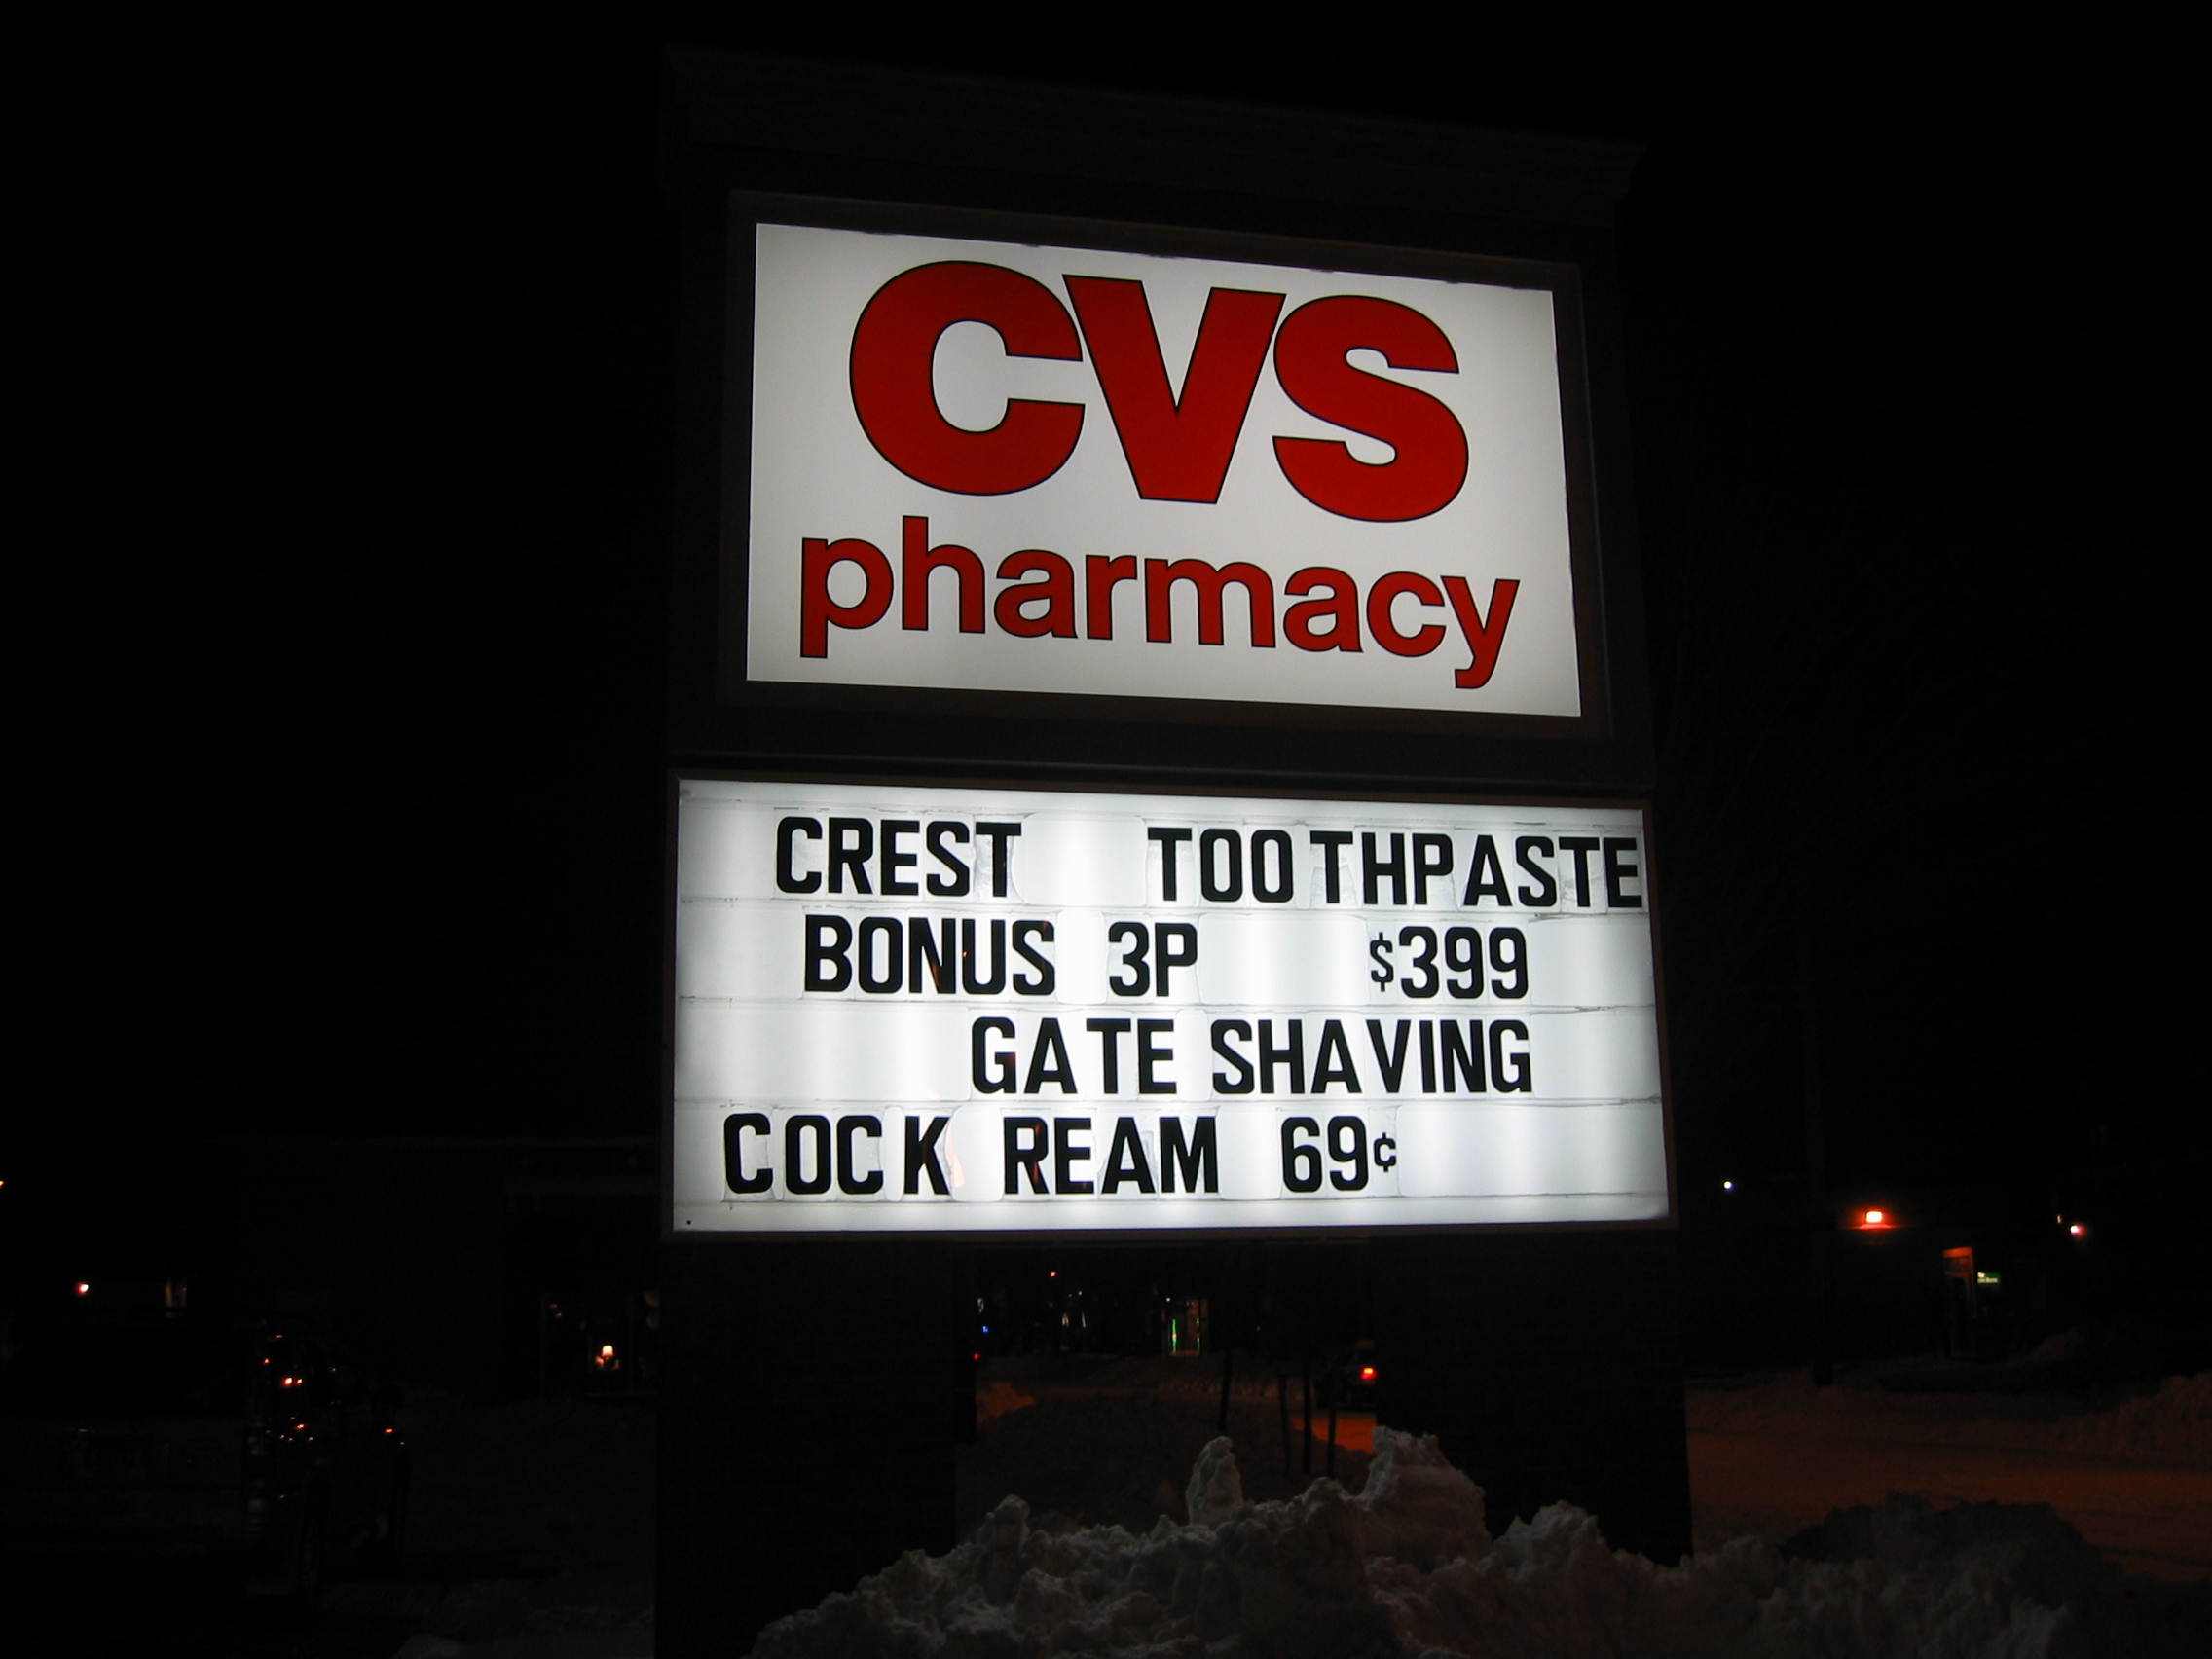 cvs pharmacy - Cvs pharmacy Crest Toothpaste Bonus 3P $399 Gate Shaving Cock Ream 696